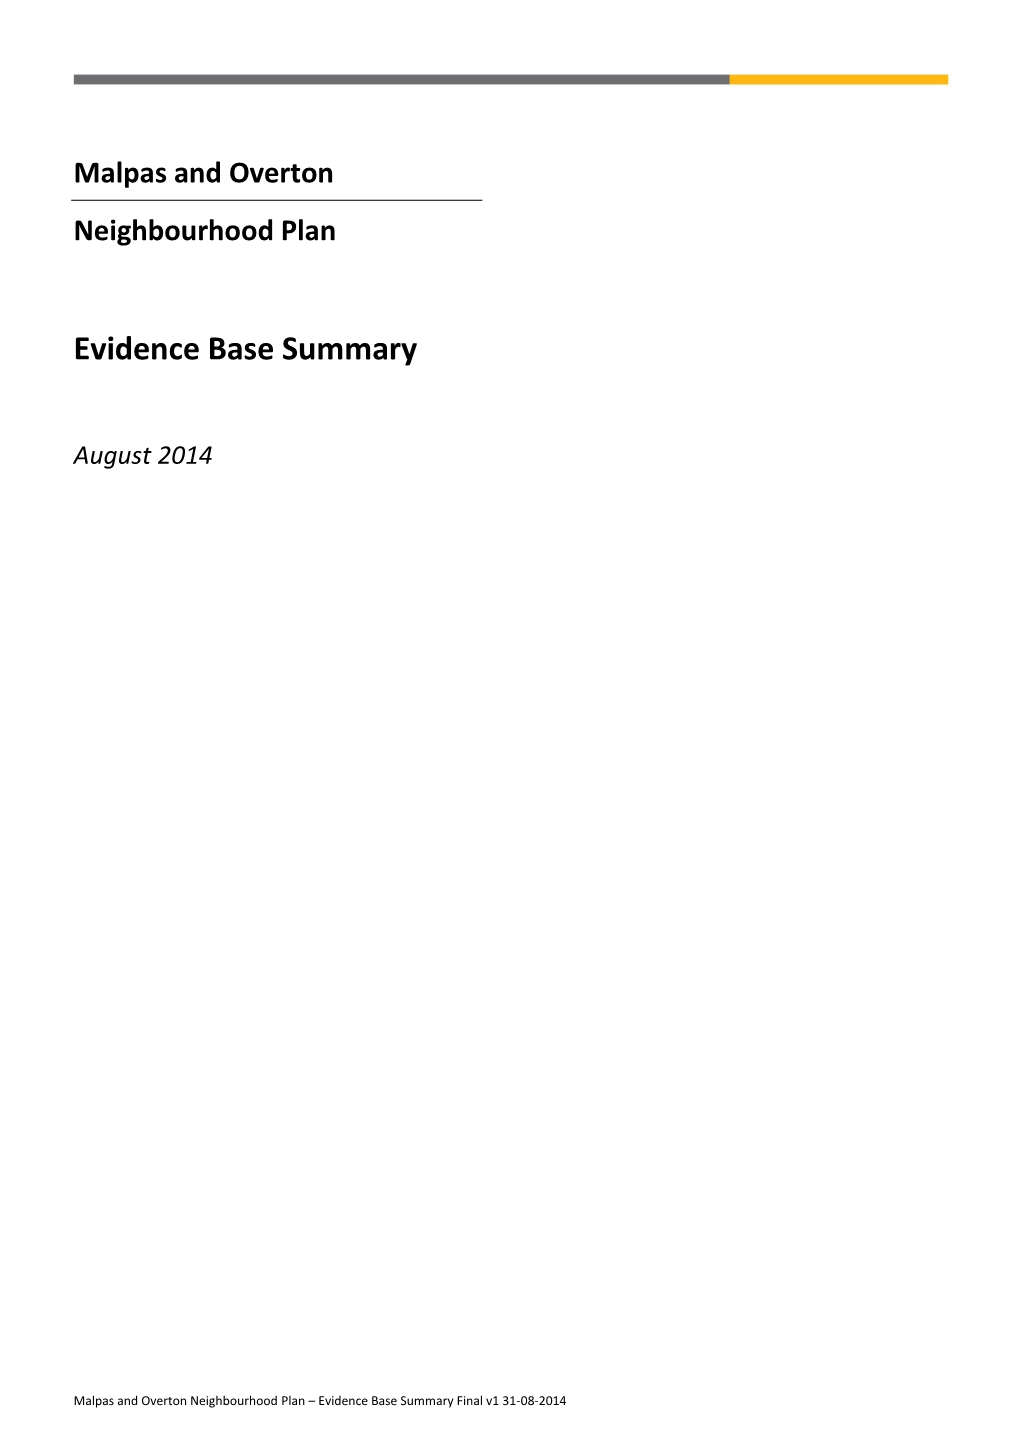 Evidence Base Summary August 2014